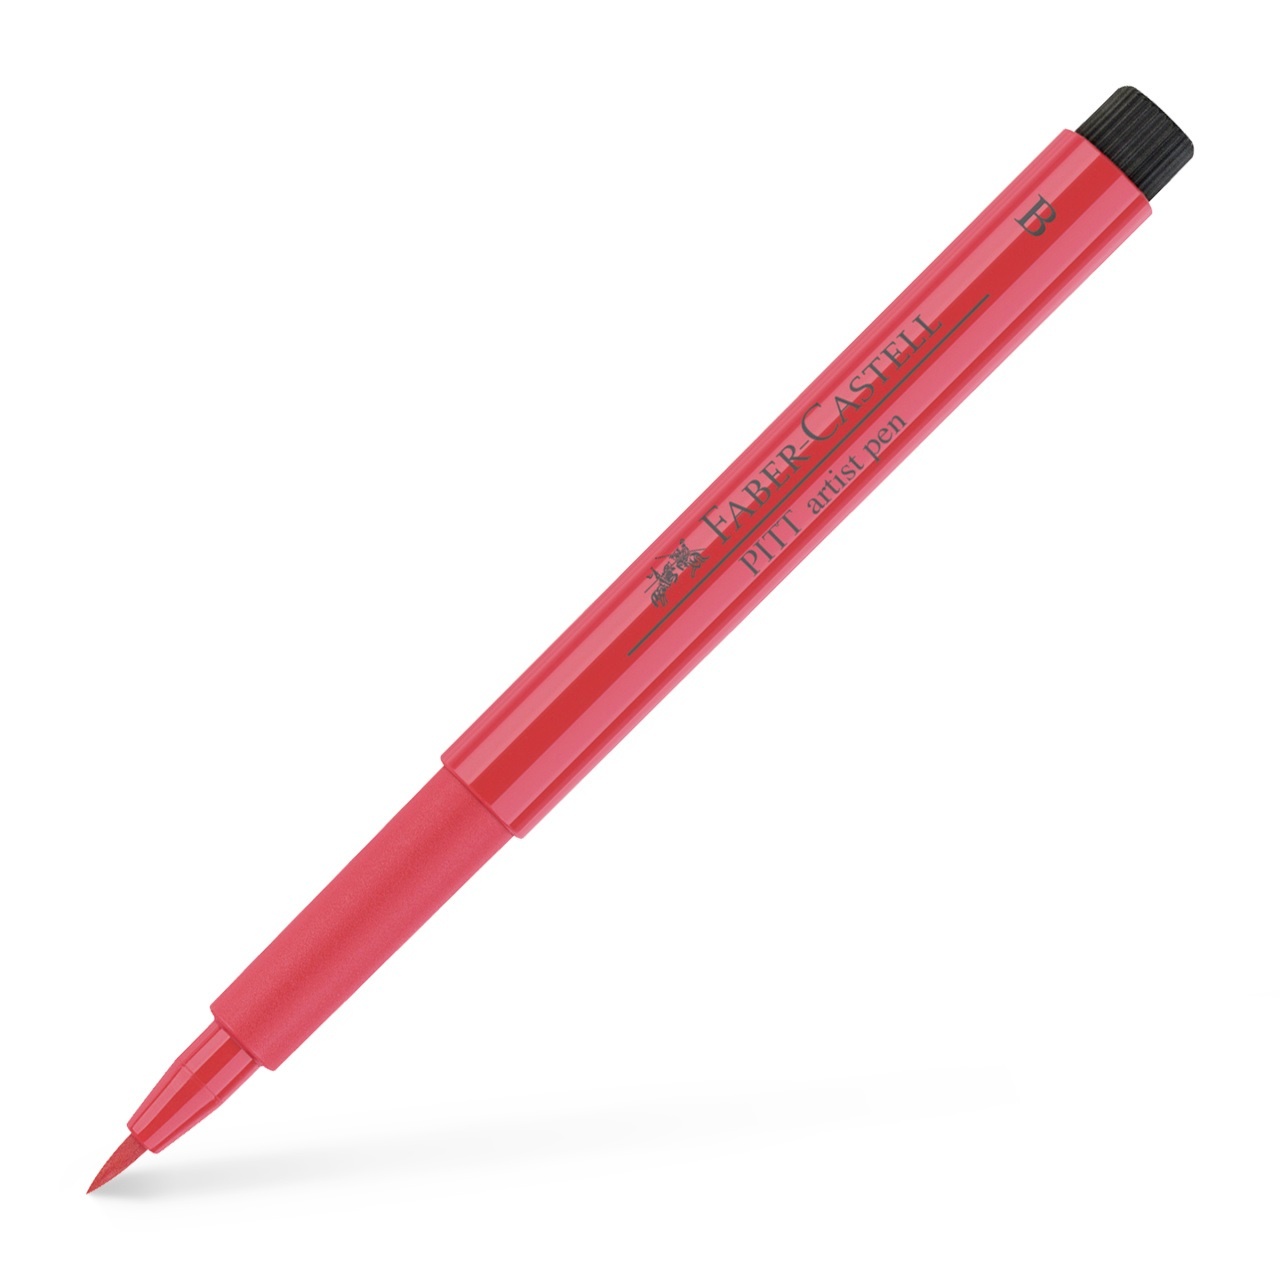 PITT Artist Brush 6-set Basic in the group Pens / Artist Pens / Felt Tip Pens at Pen Store (105145)